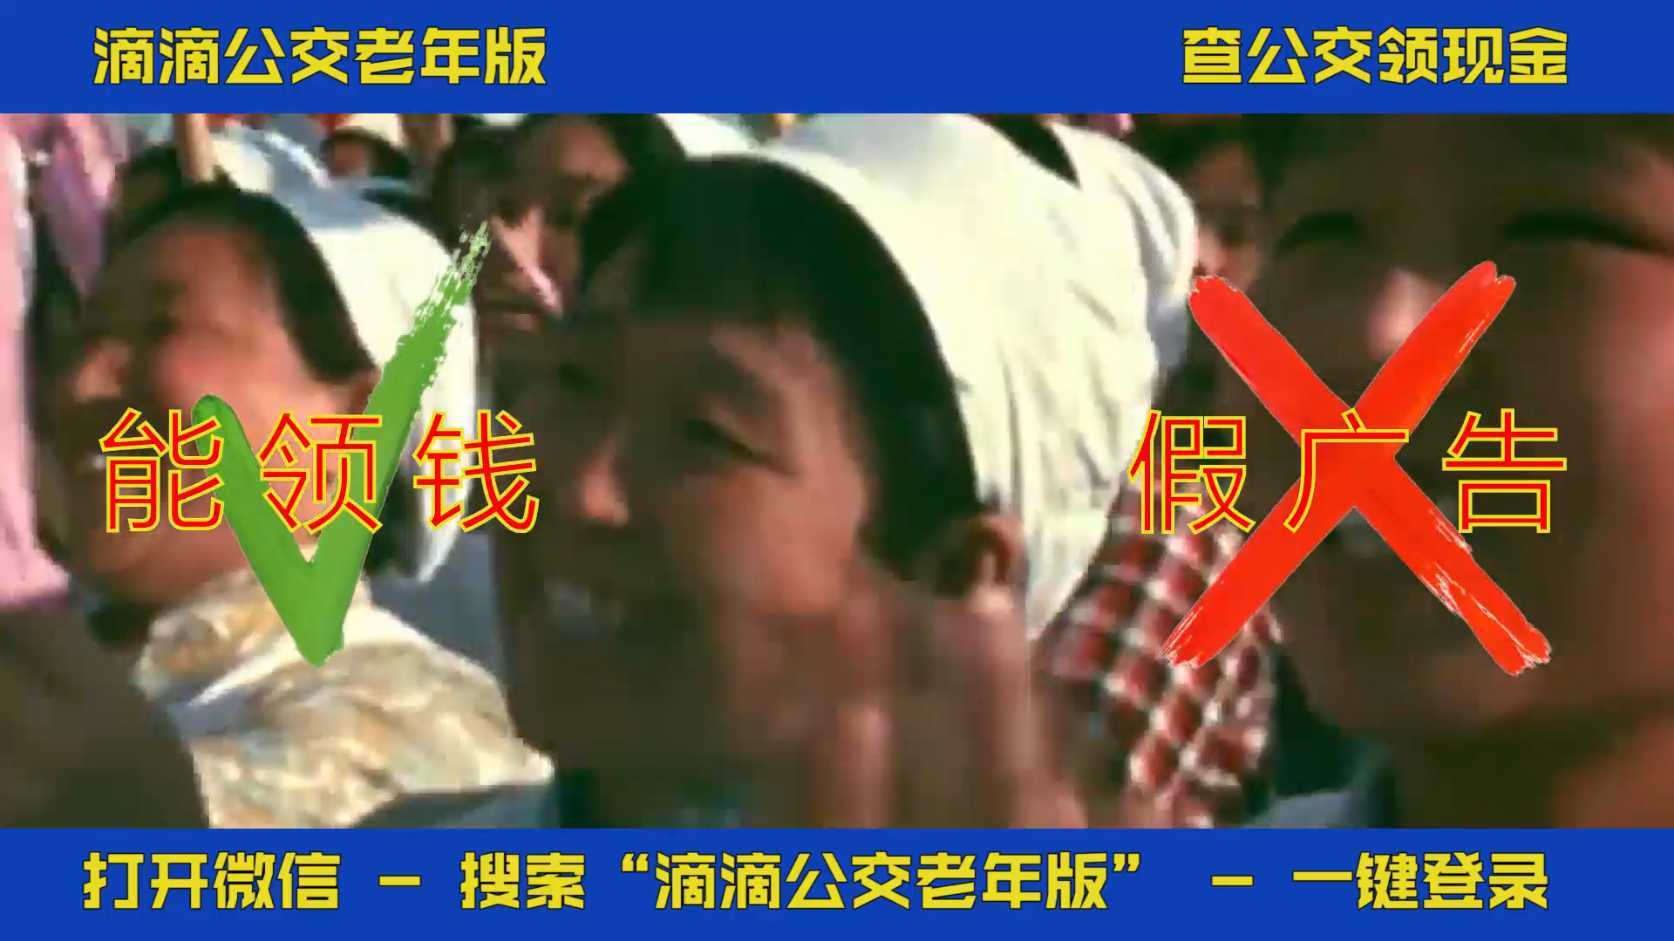 【土嗨风】滴滴公交老年版——宣传视频